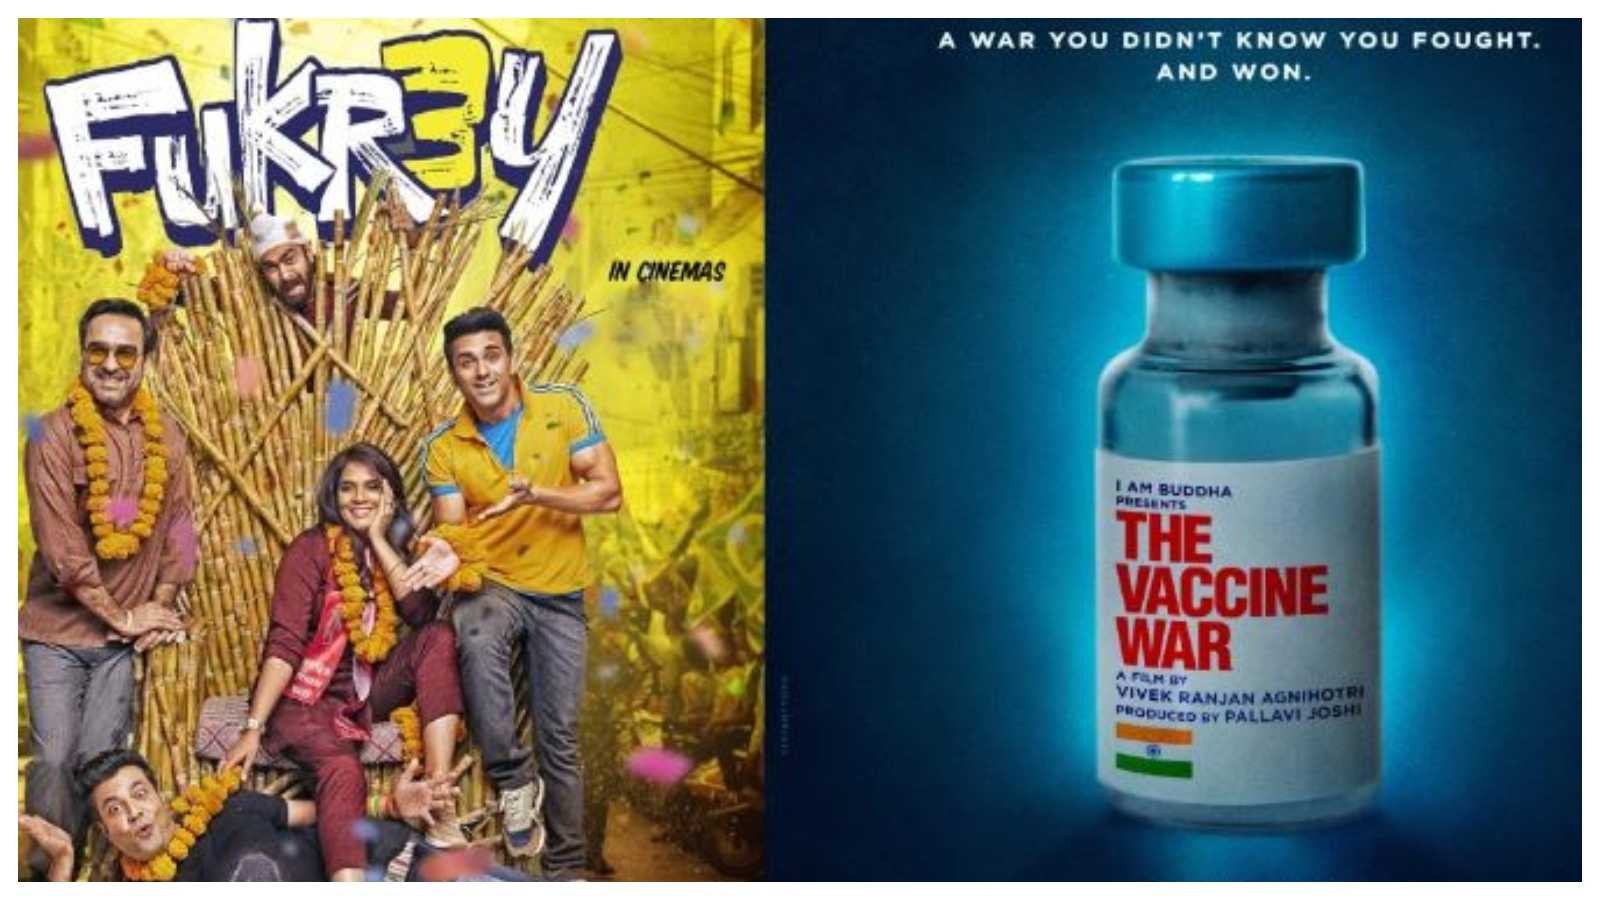 Fukrey 3 Vs The Vaccine War Box Office Day 2: The comedy sequel takes lead, Vivek Agnihotri’s film struggles to pick